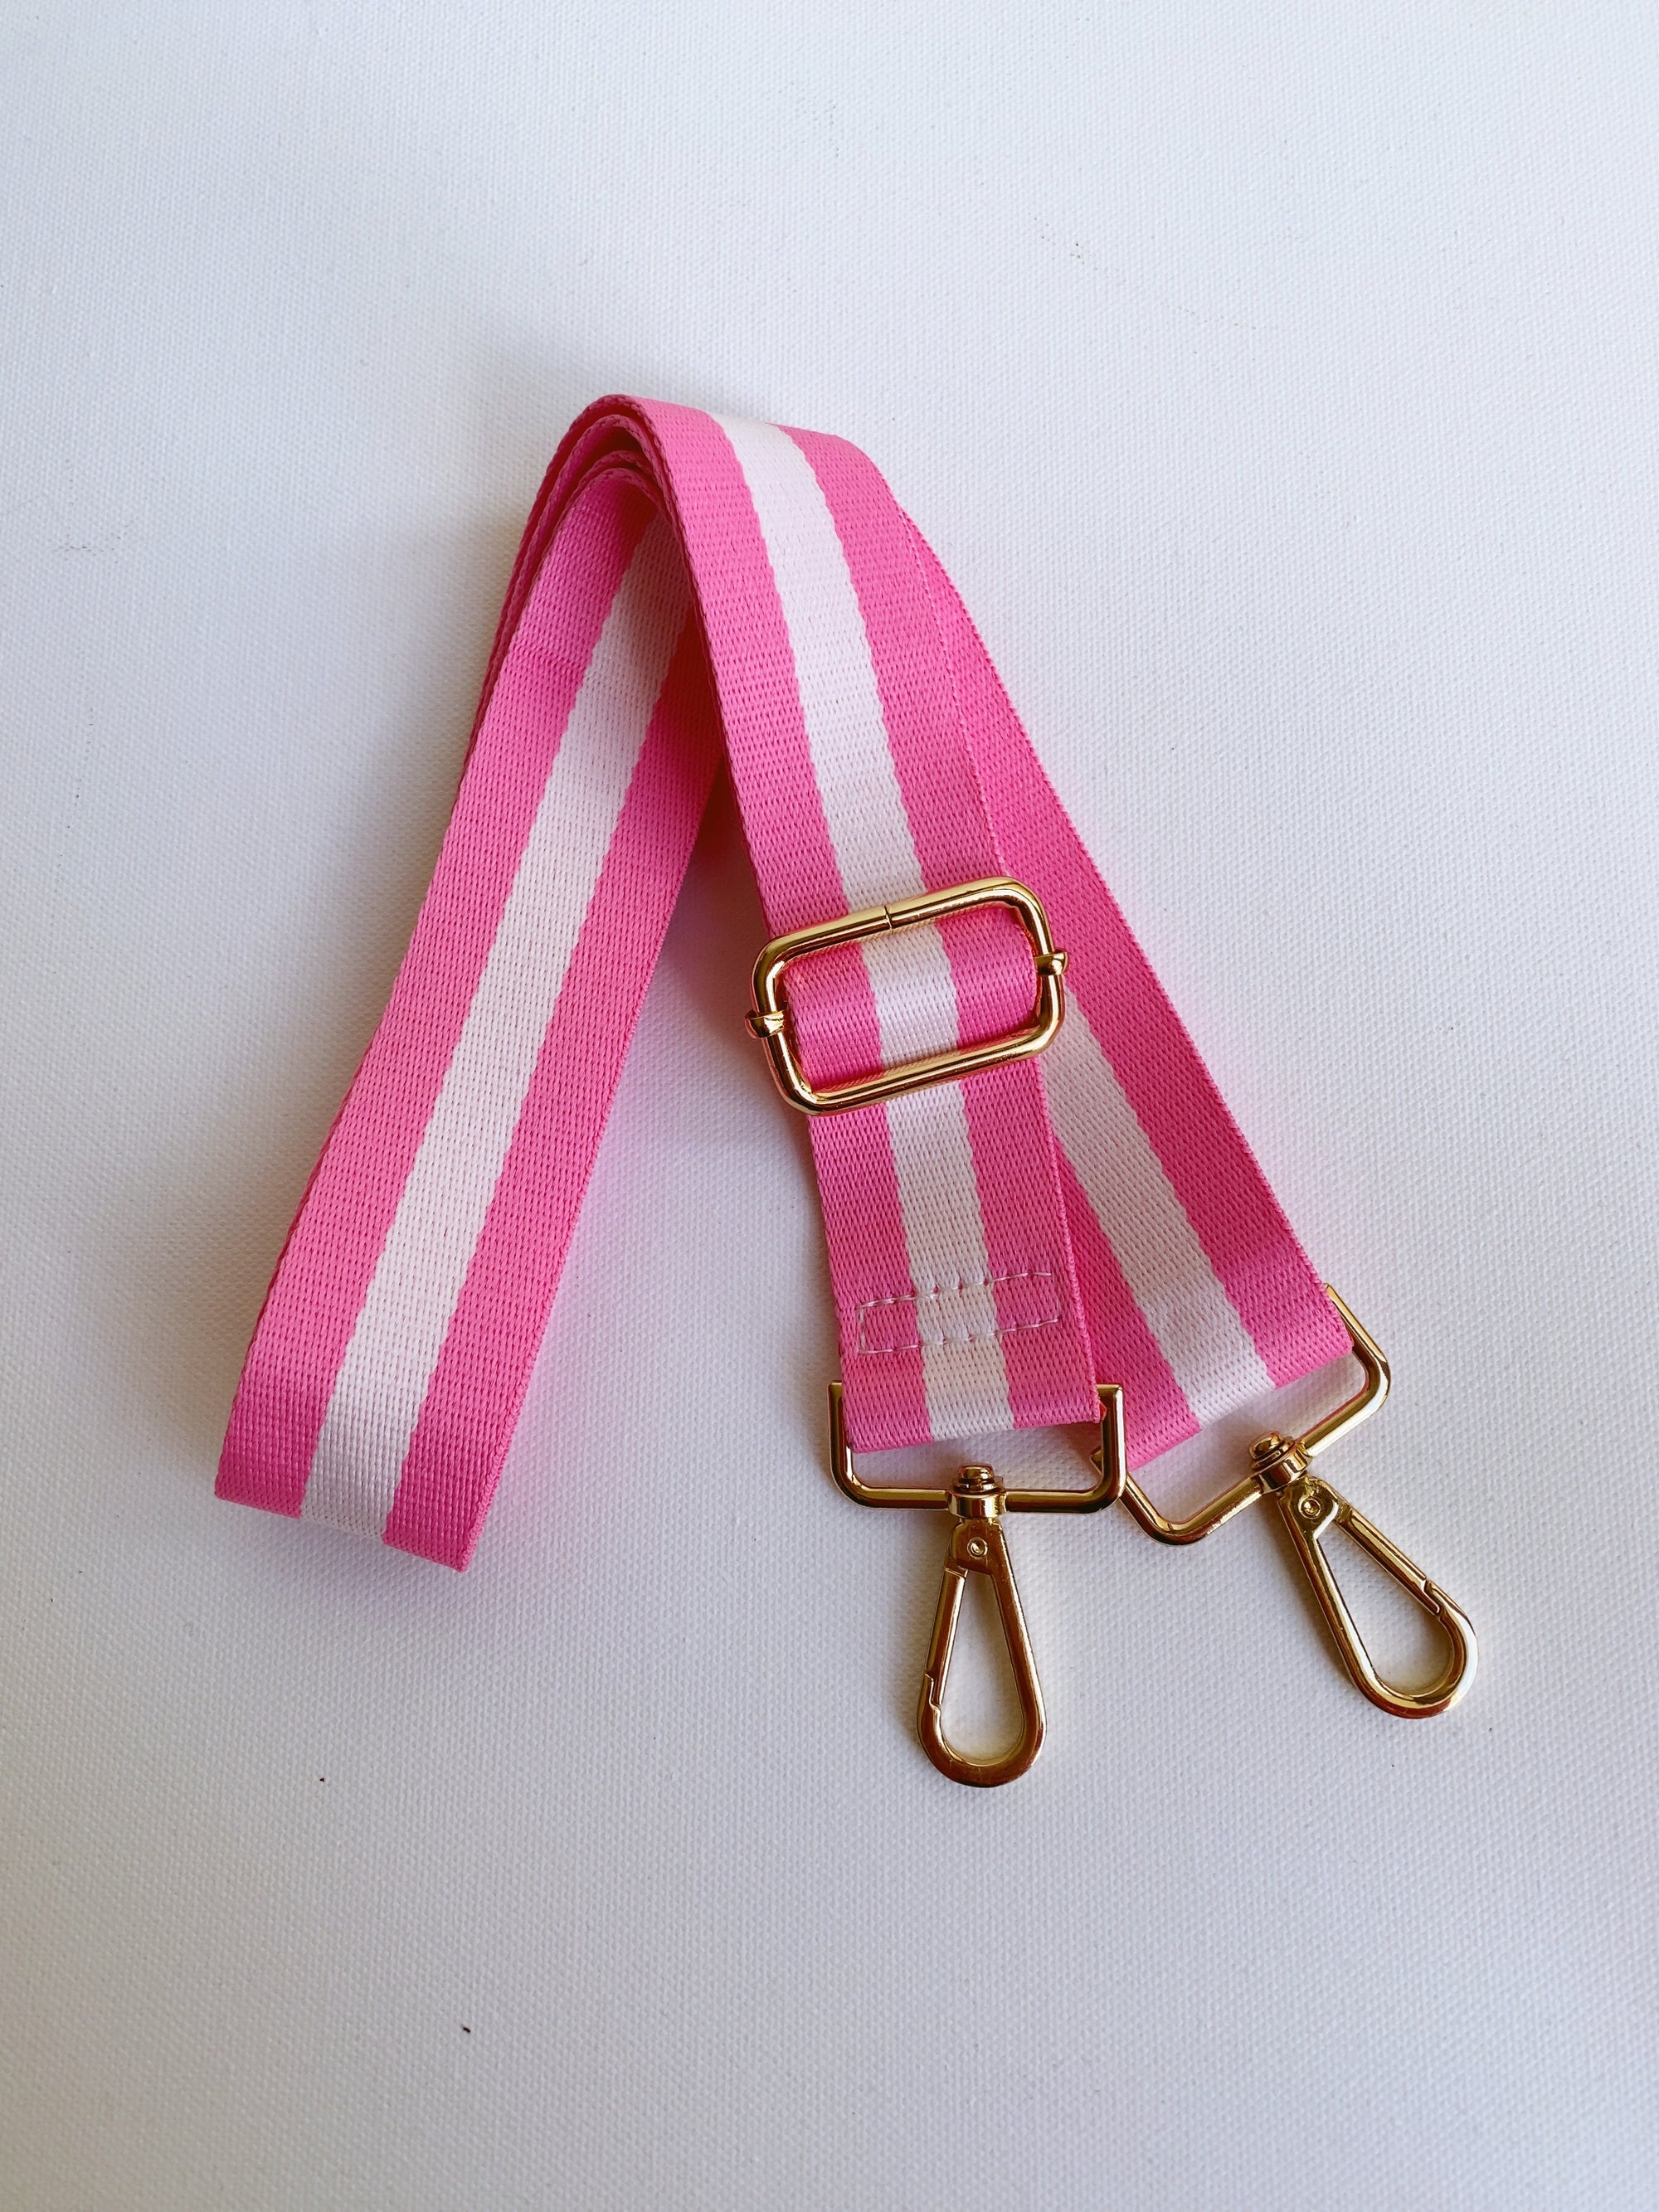 Stripe Bag Strap - Pink/White